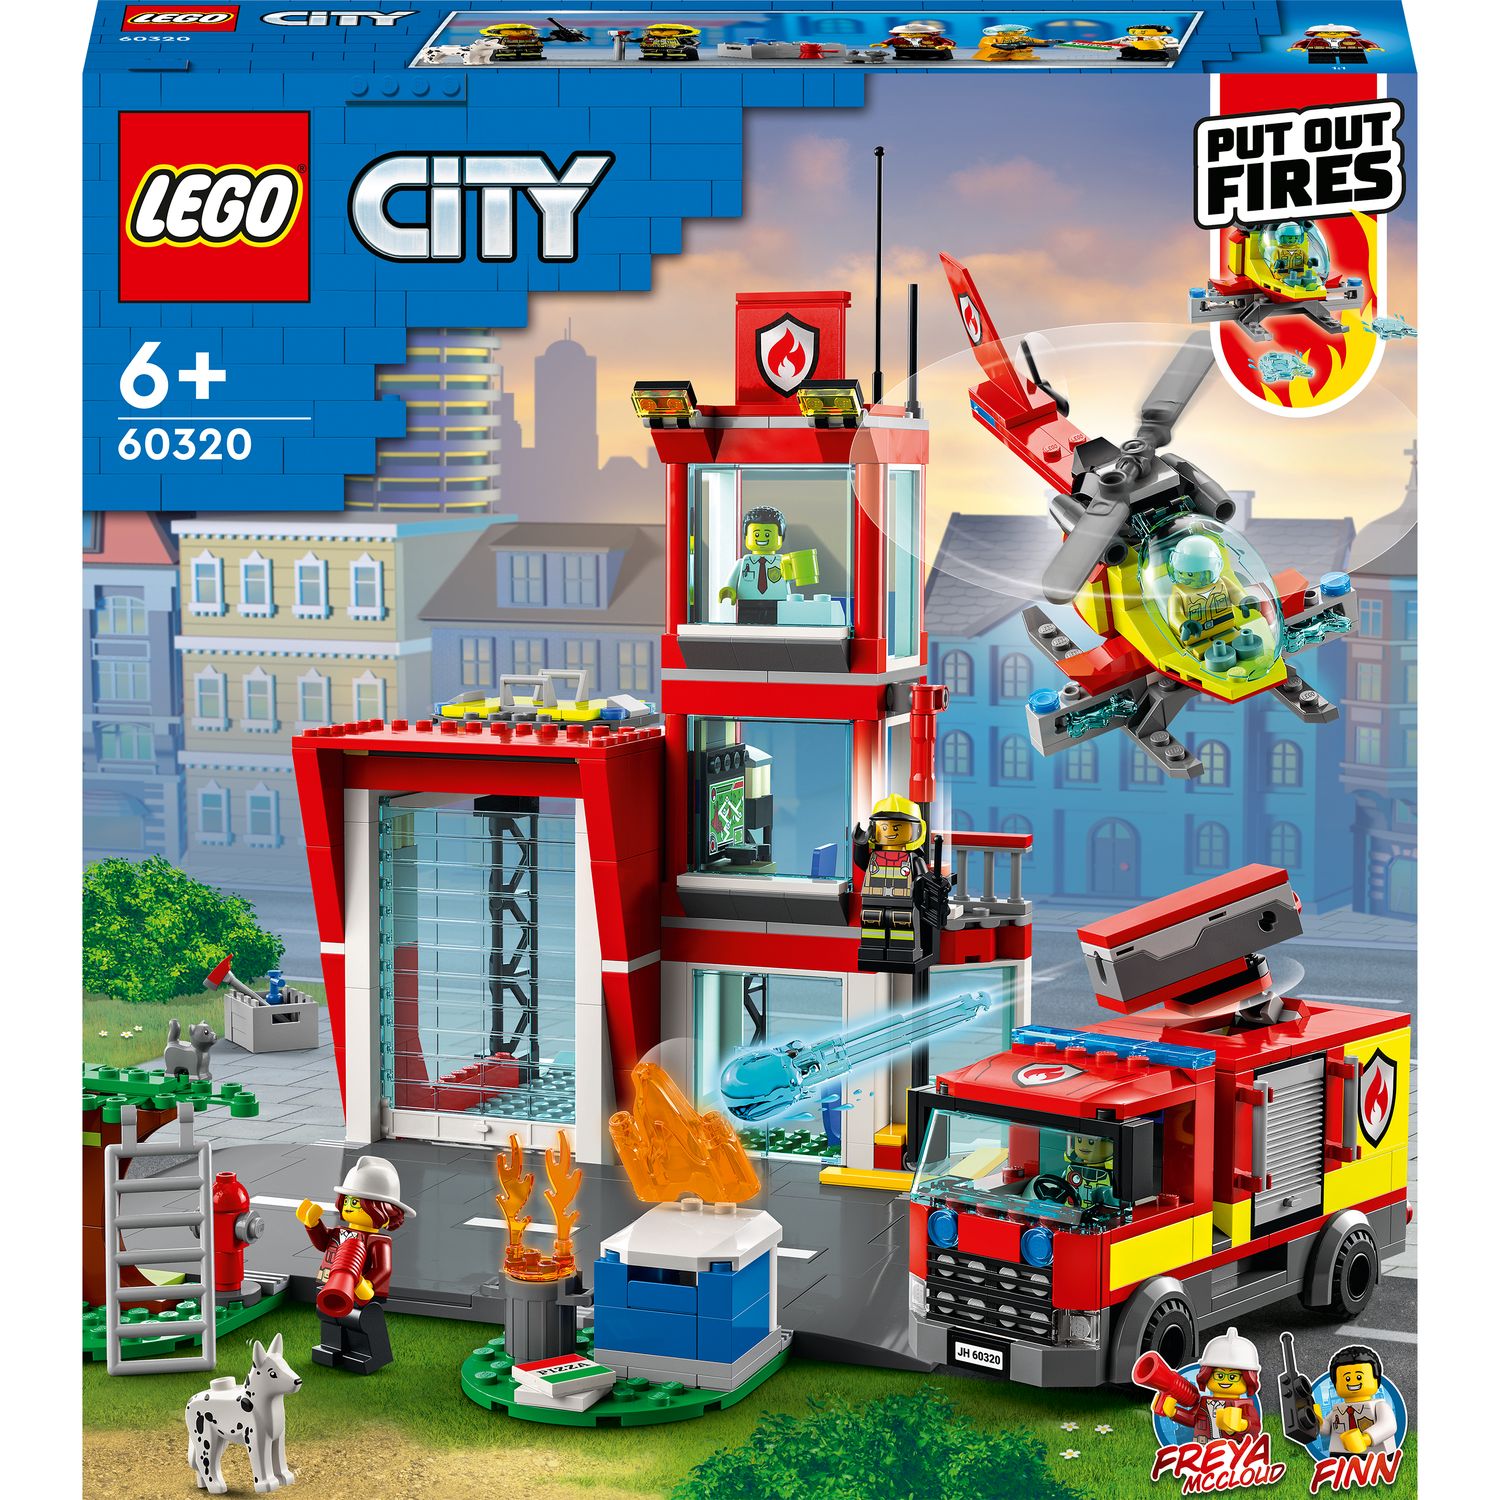 LEGO City 60215 La caserne de Pompiers Jouet pour Enfants de 5 ans